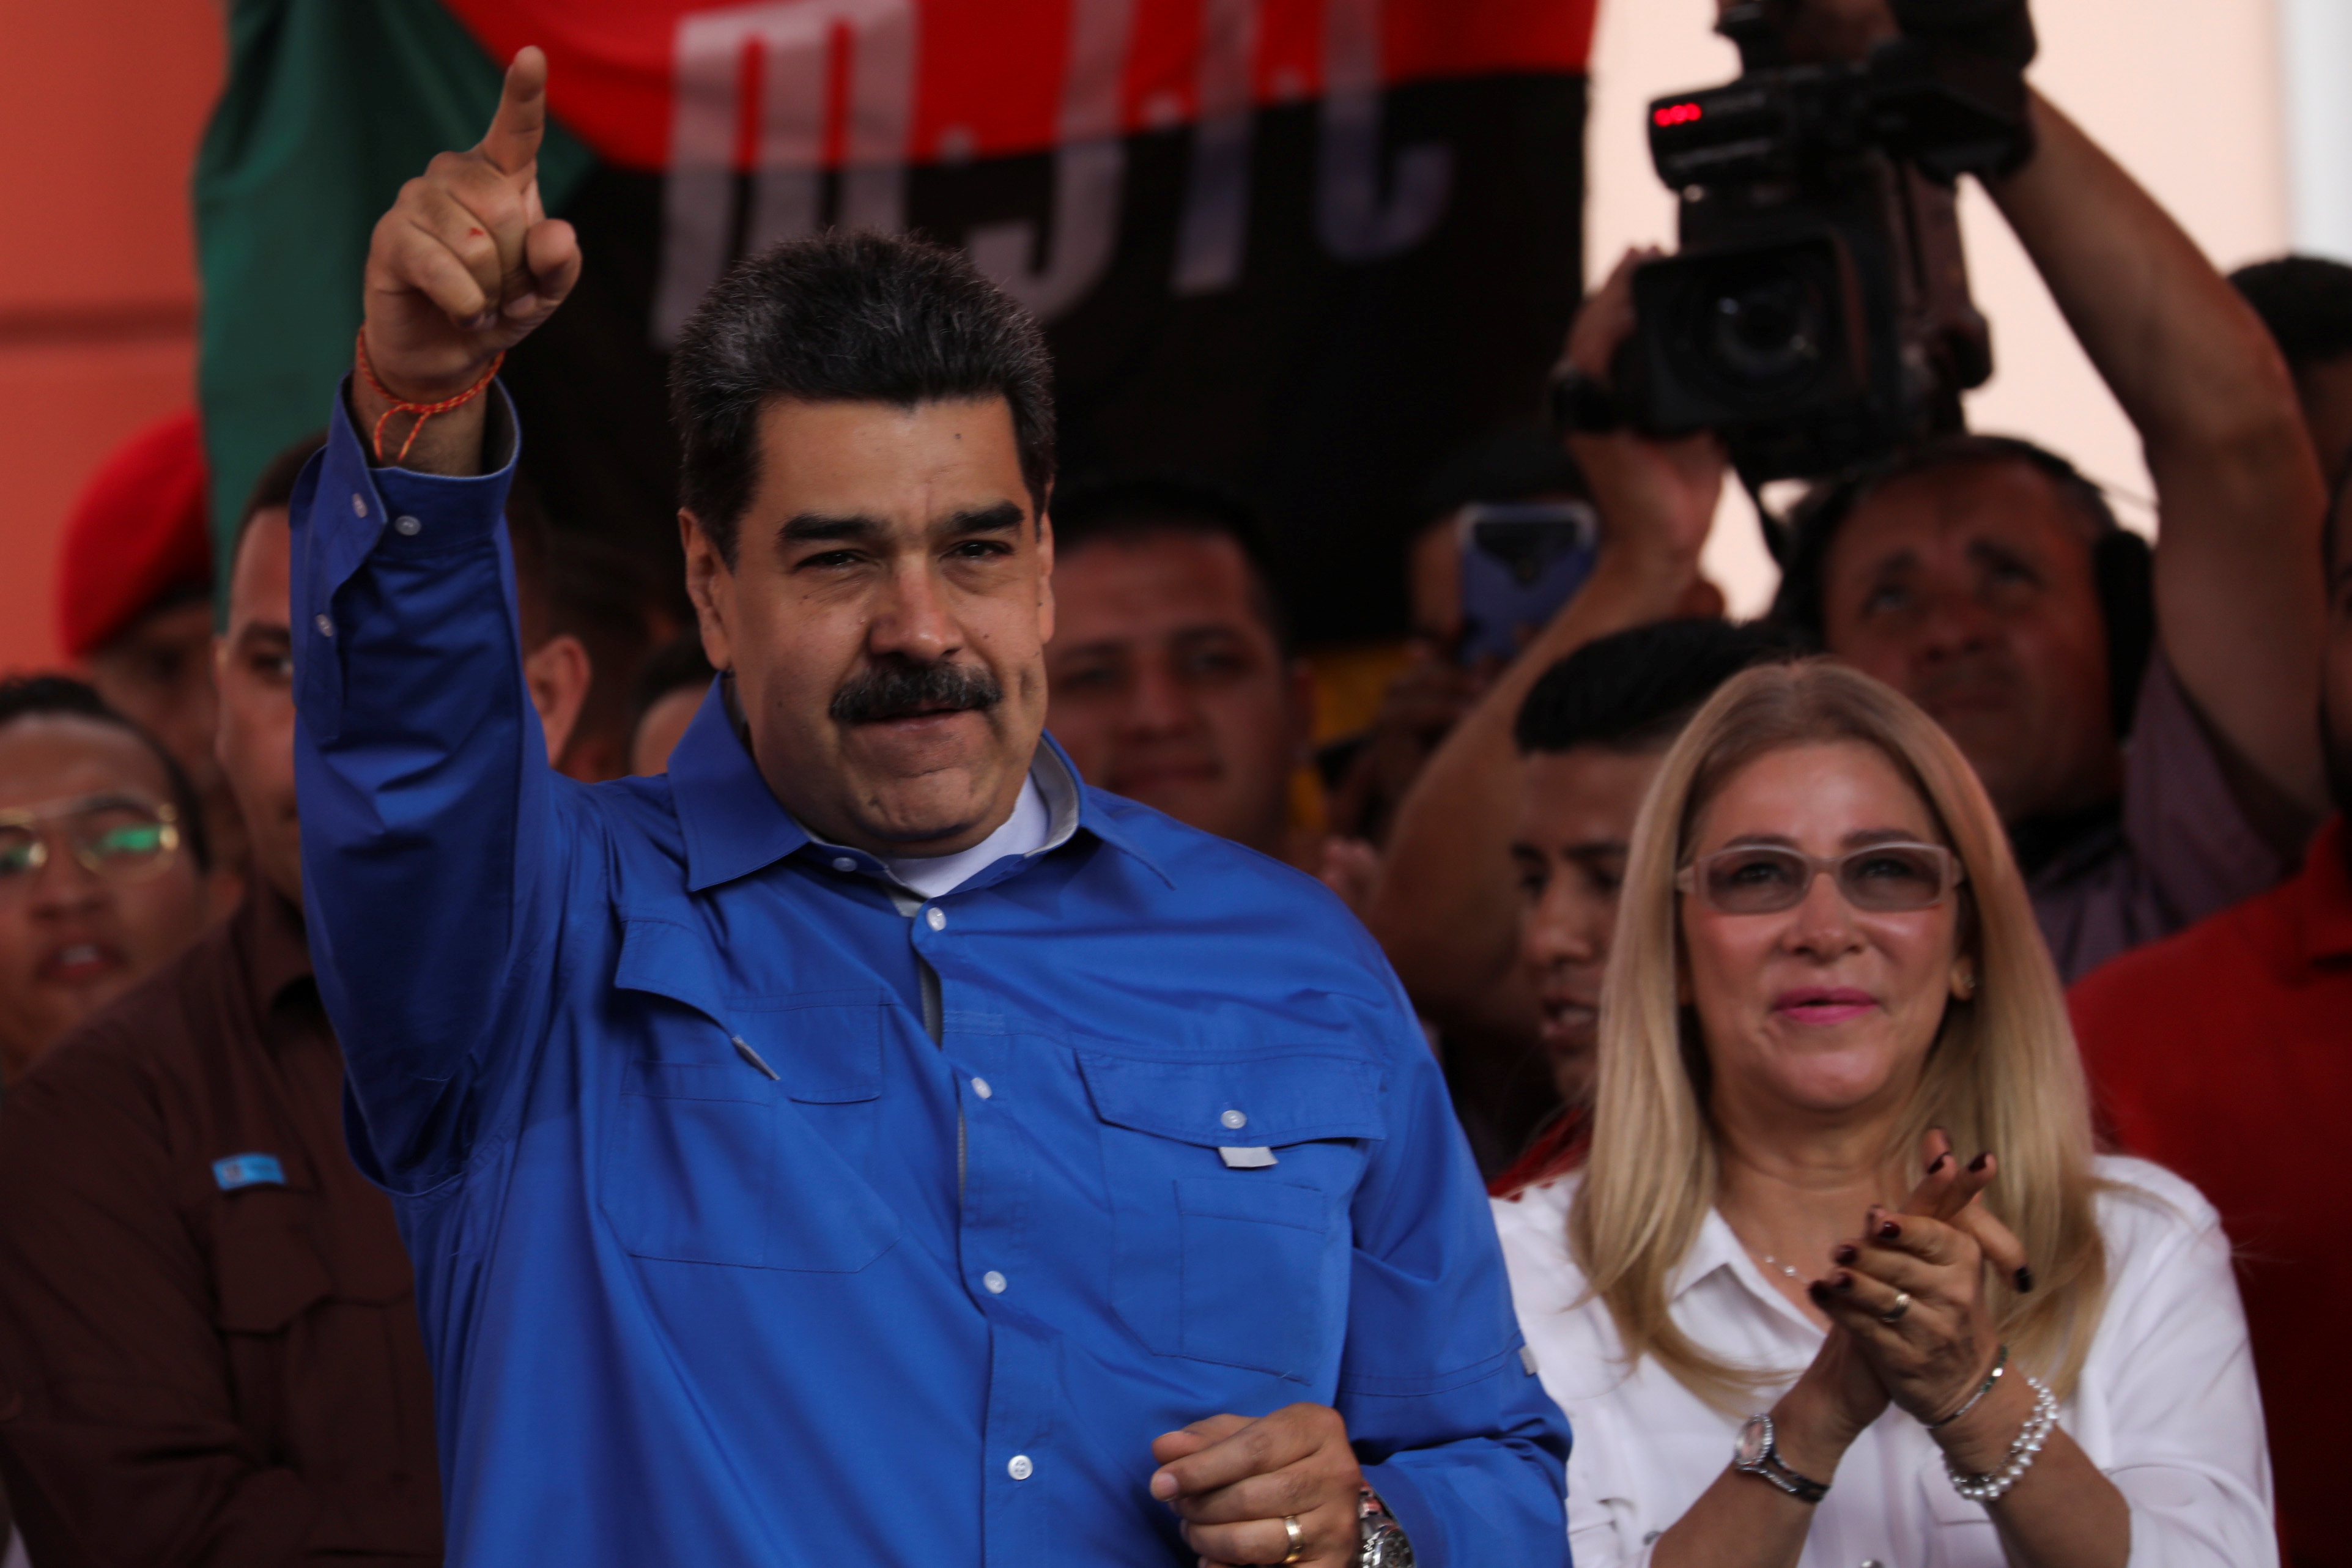 “La regañé”: Maduro criticó a Cilia por no cuidar el distanciamiento en campaña